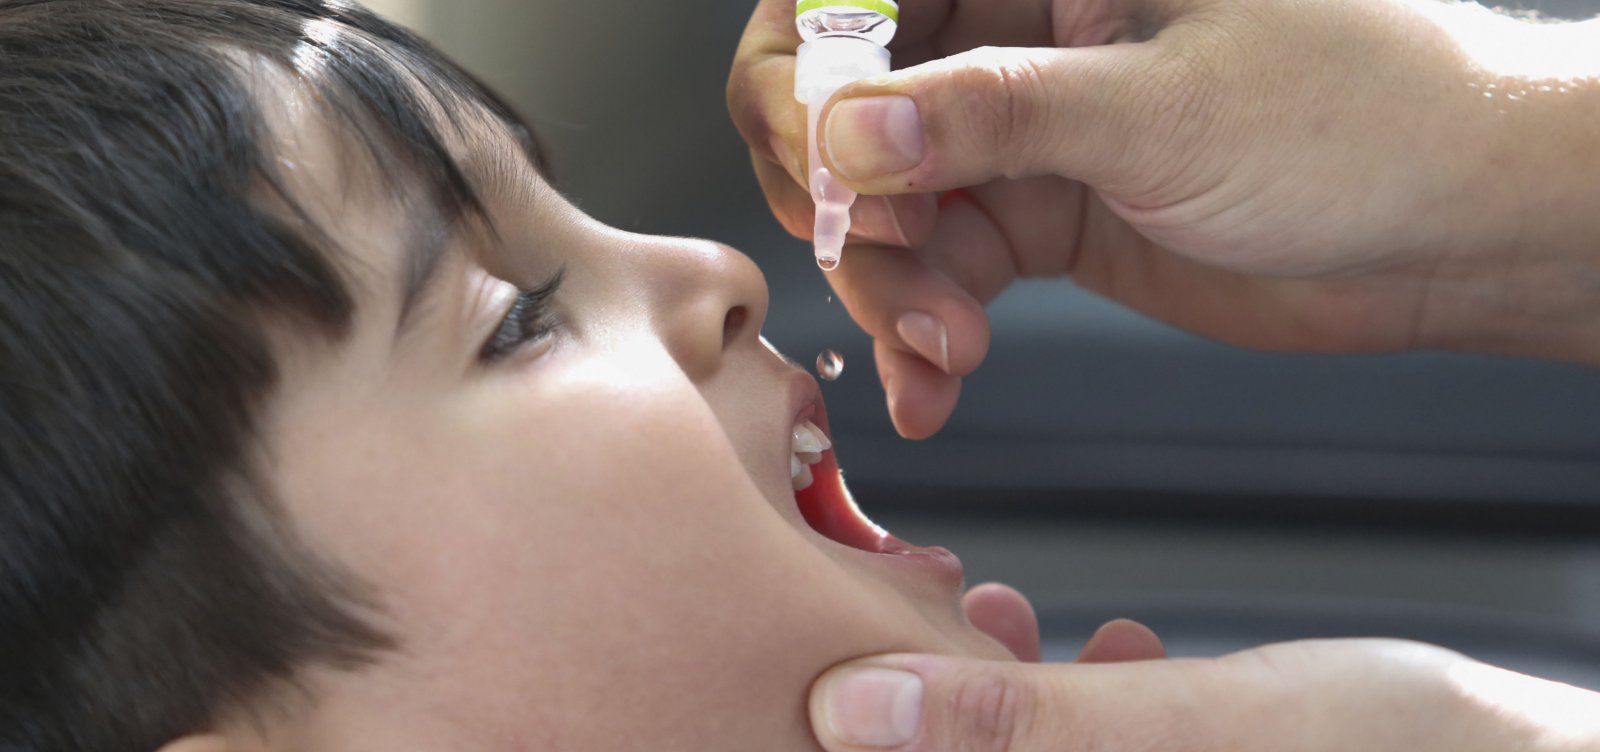 Brasil avança na vacinação infantil e deixa ranking dos países com menor cobertura vacinal